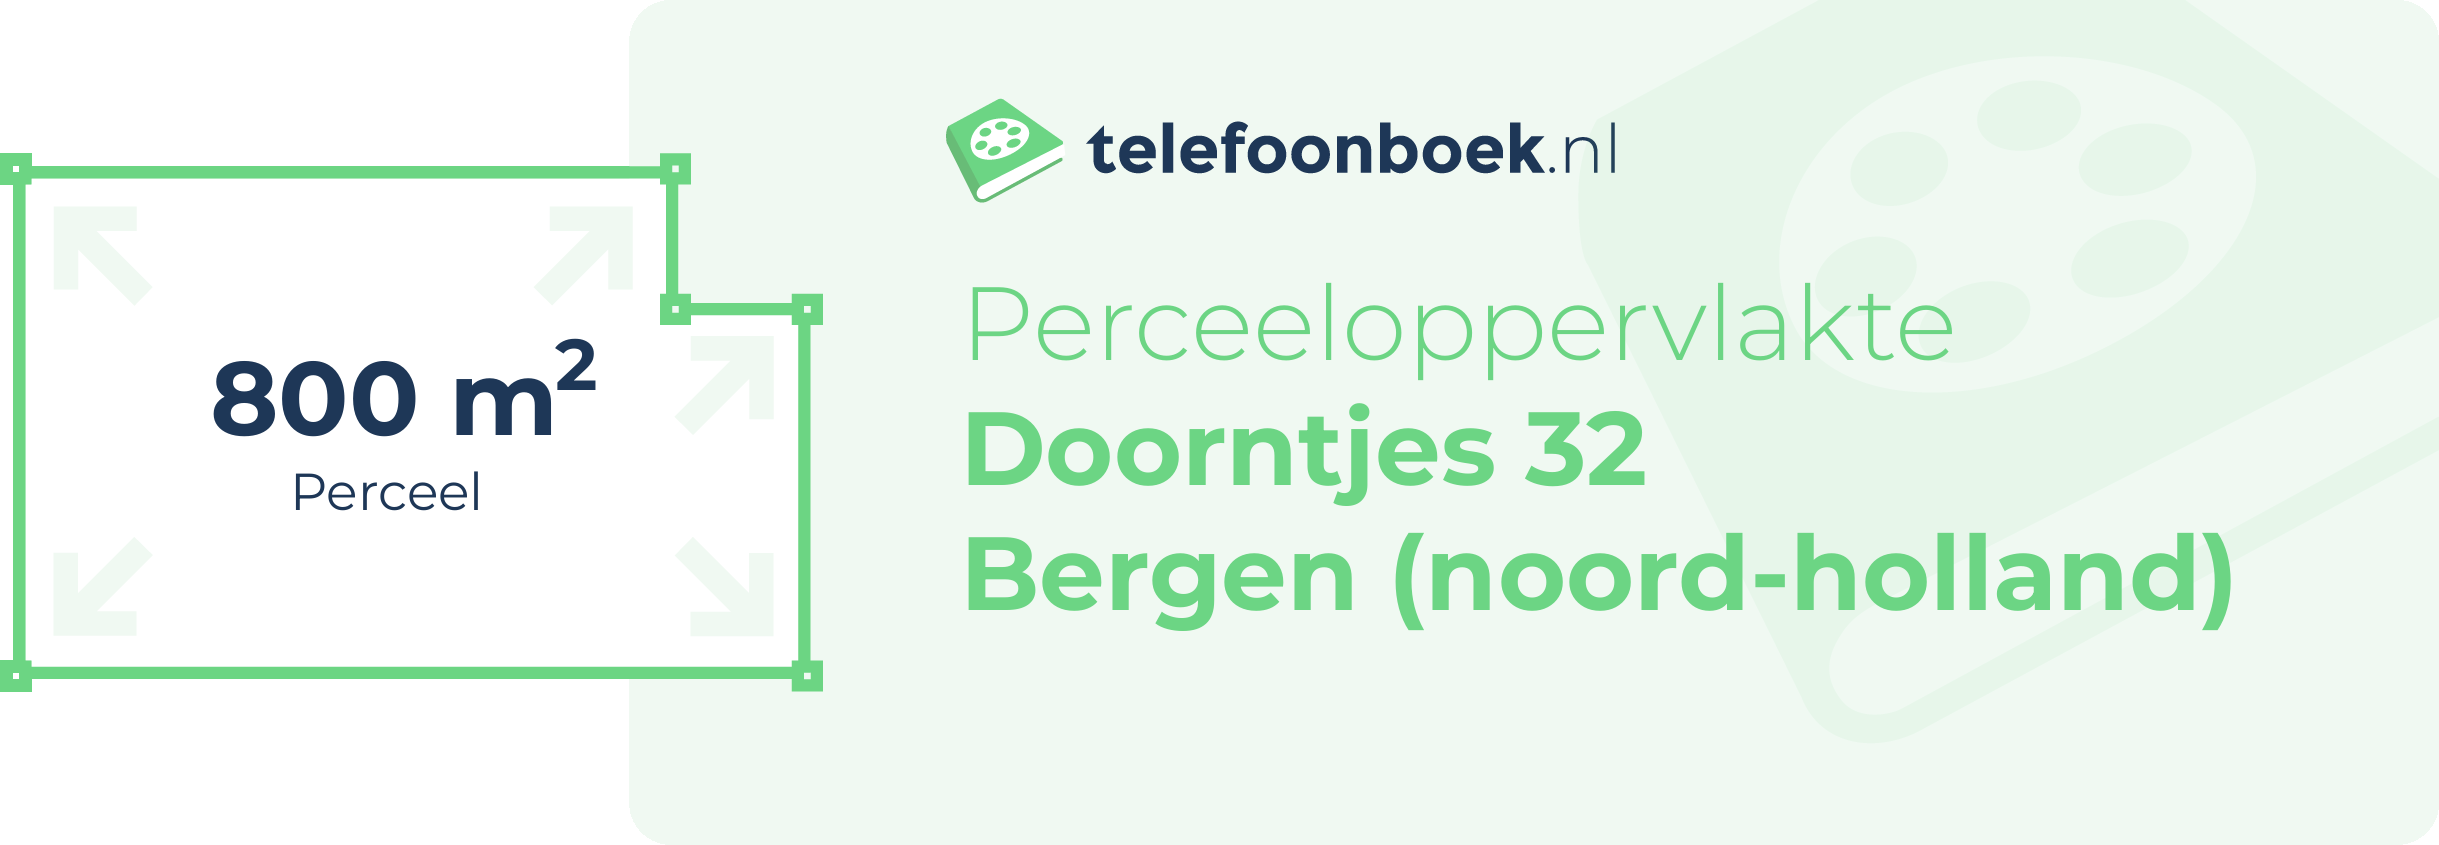 Perceeloppervlakte Doorntjes 32 Bergen (Noord-Holland)